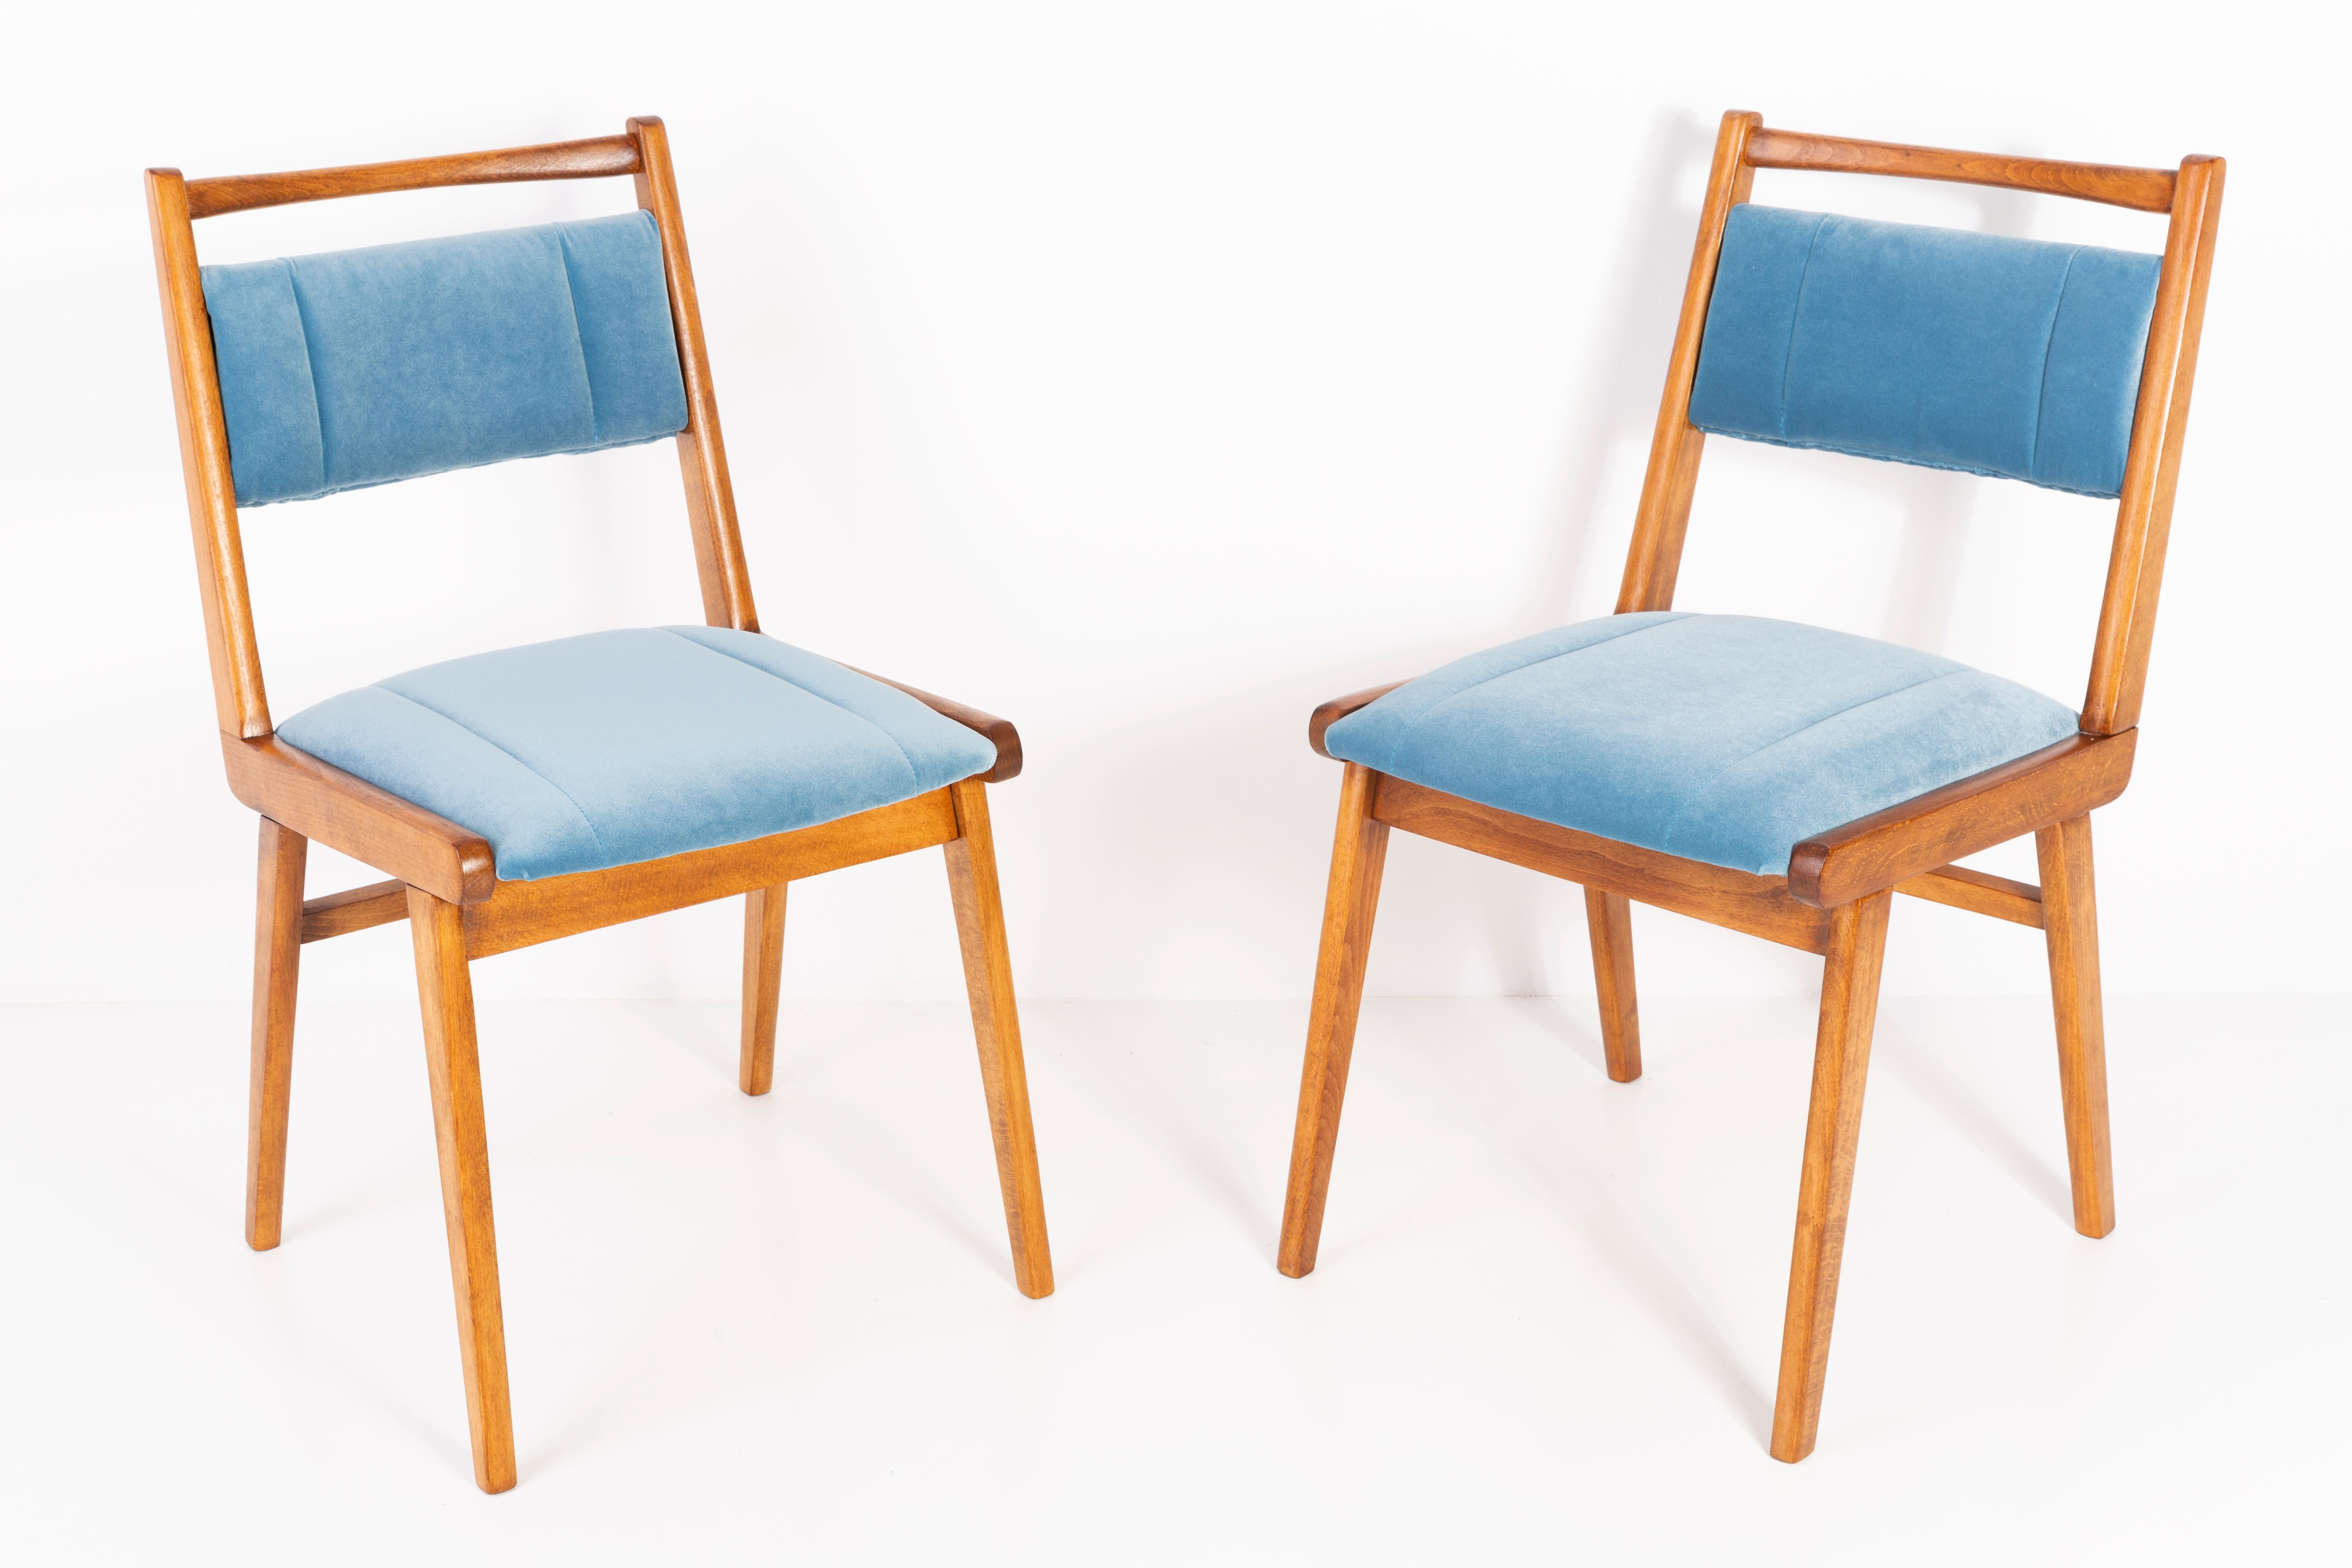 Chaises conçues par le professeur Rajmund Halas. C'est un modèle de type jar. Fabriqué en bois de hêtre. Les chaises ont été entièrement rénovées et les boiseries ont été rafraîchies. L'assise et le dossier sont habillés d'un tissu velours bleu